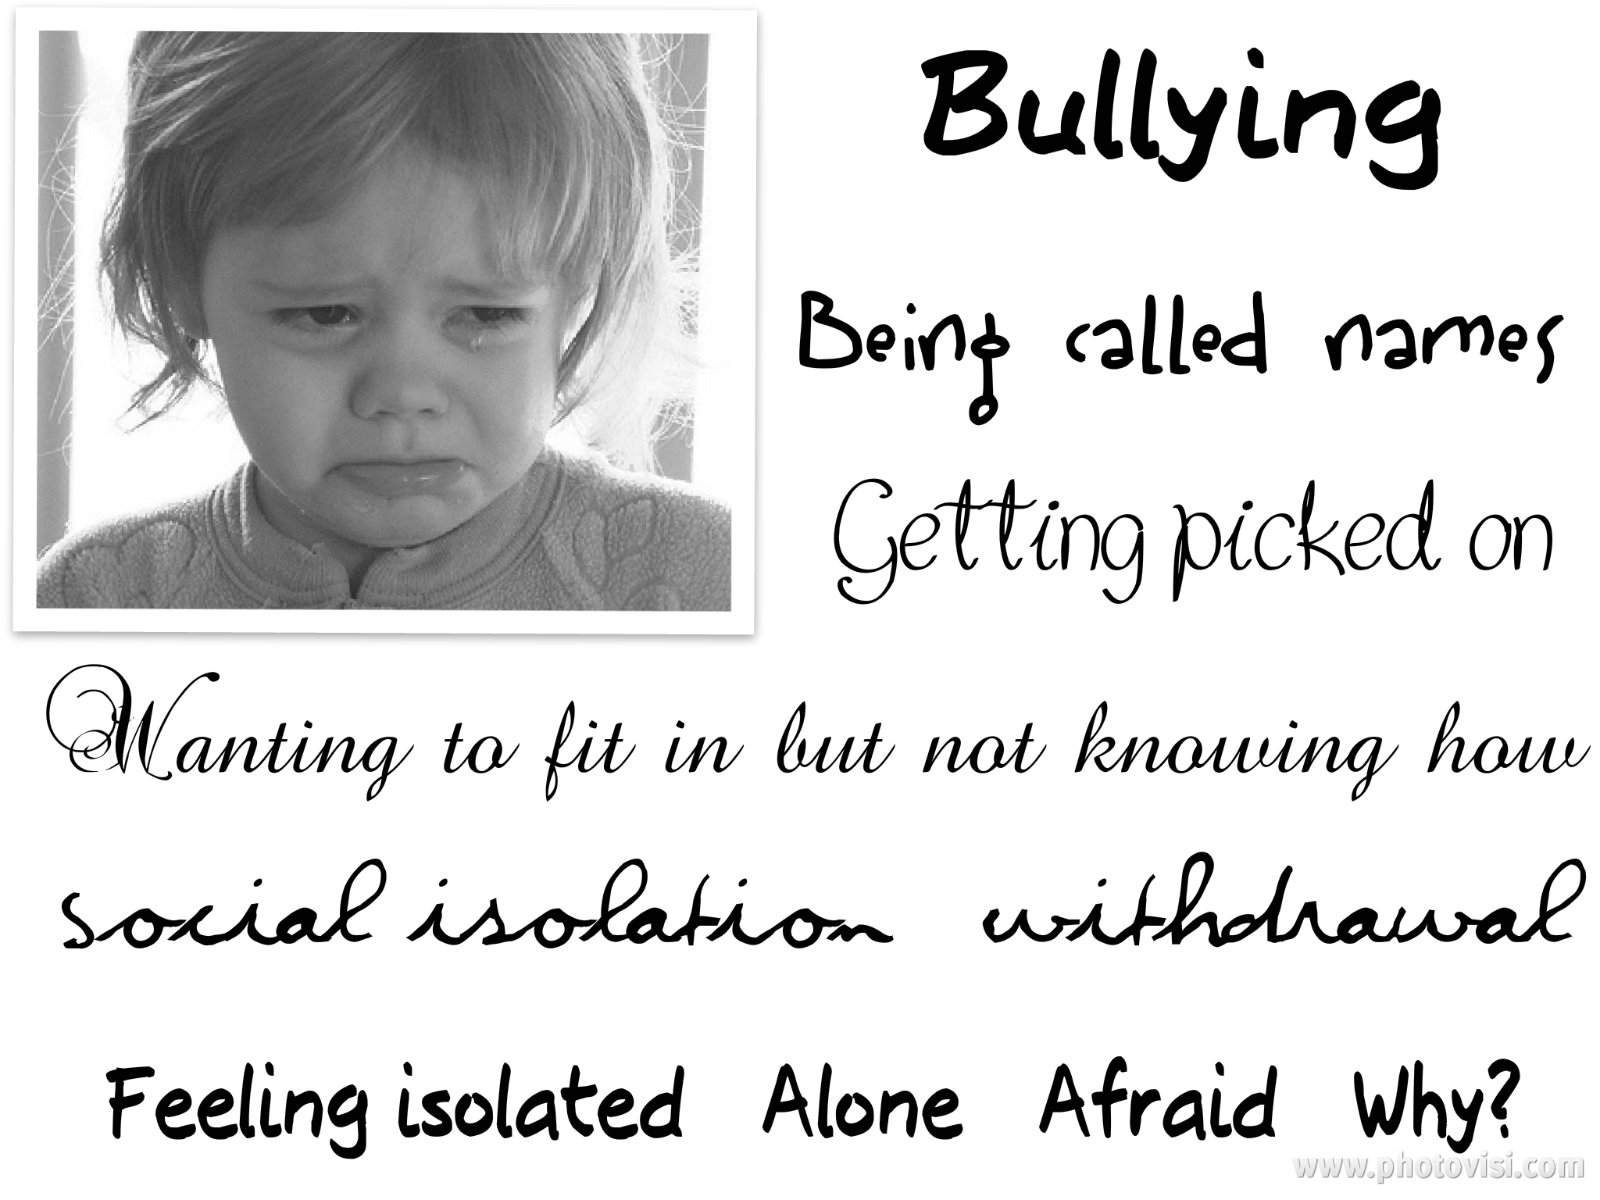 bullying_photovisi.jpg